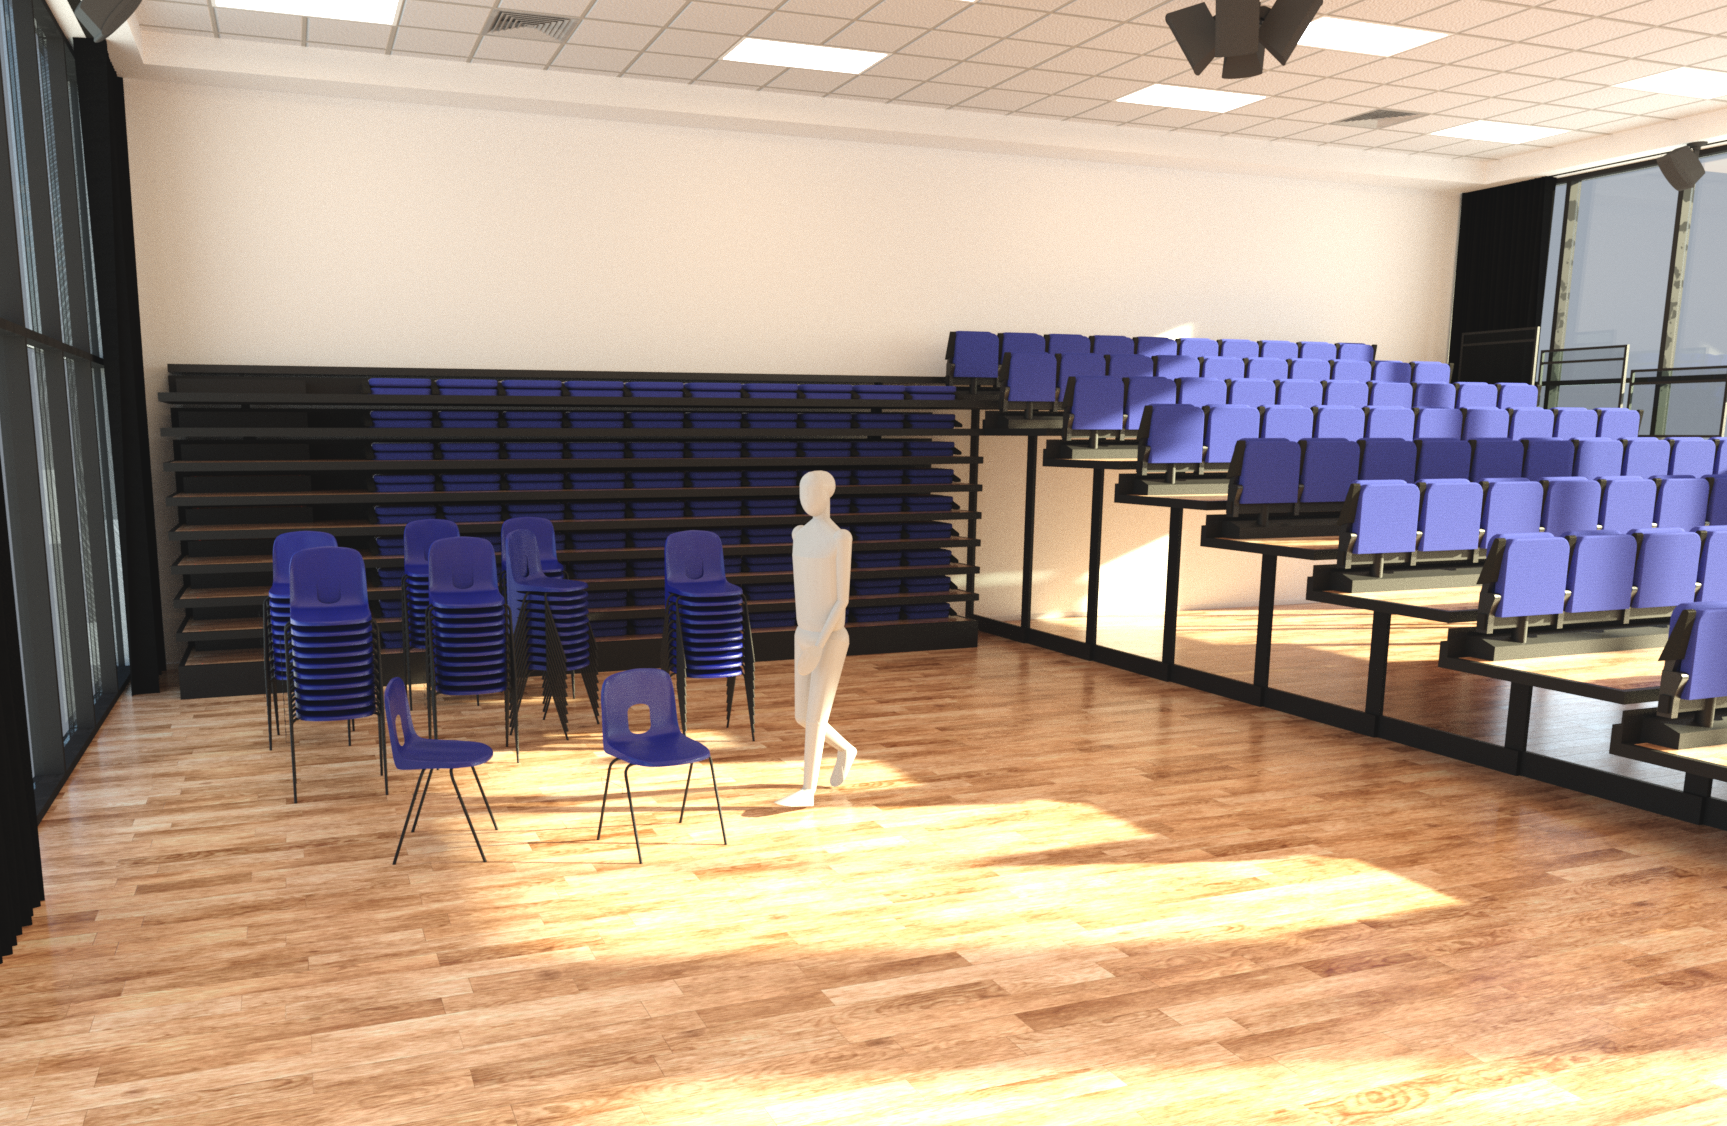 Revit render showing auditorium seating being stowed away.